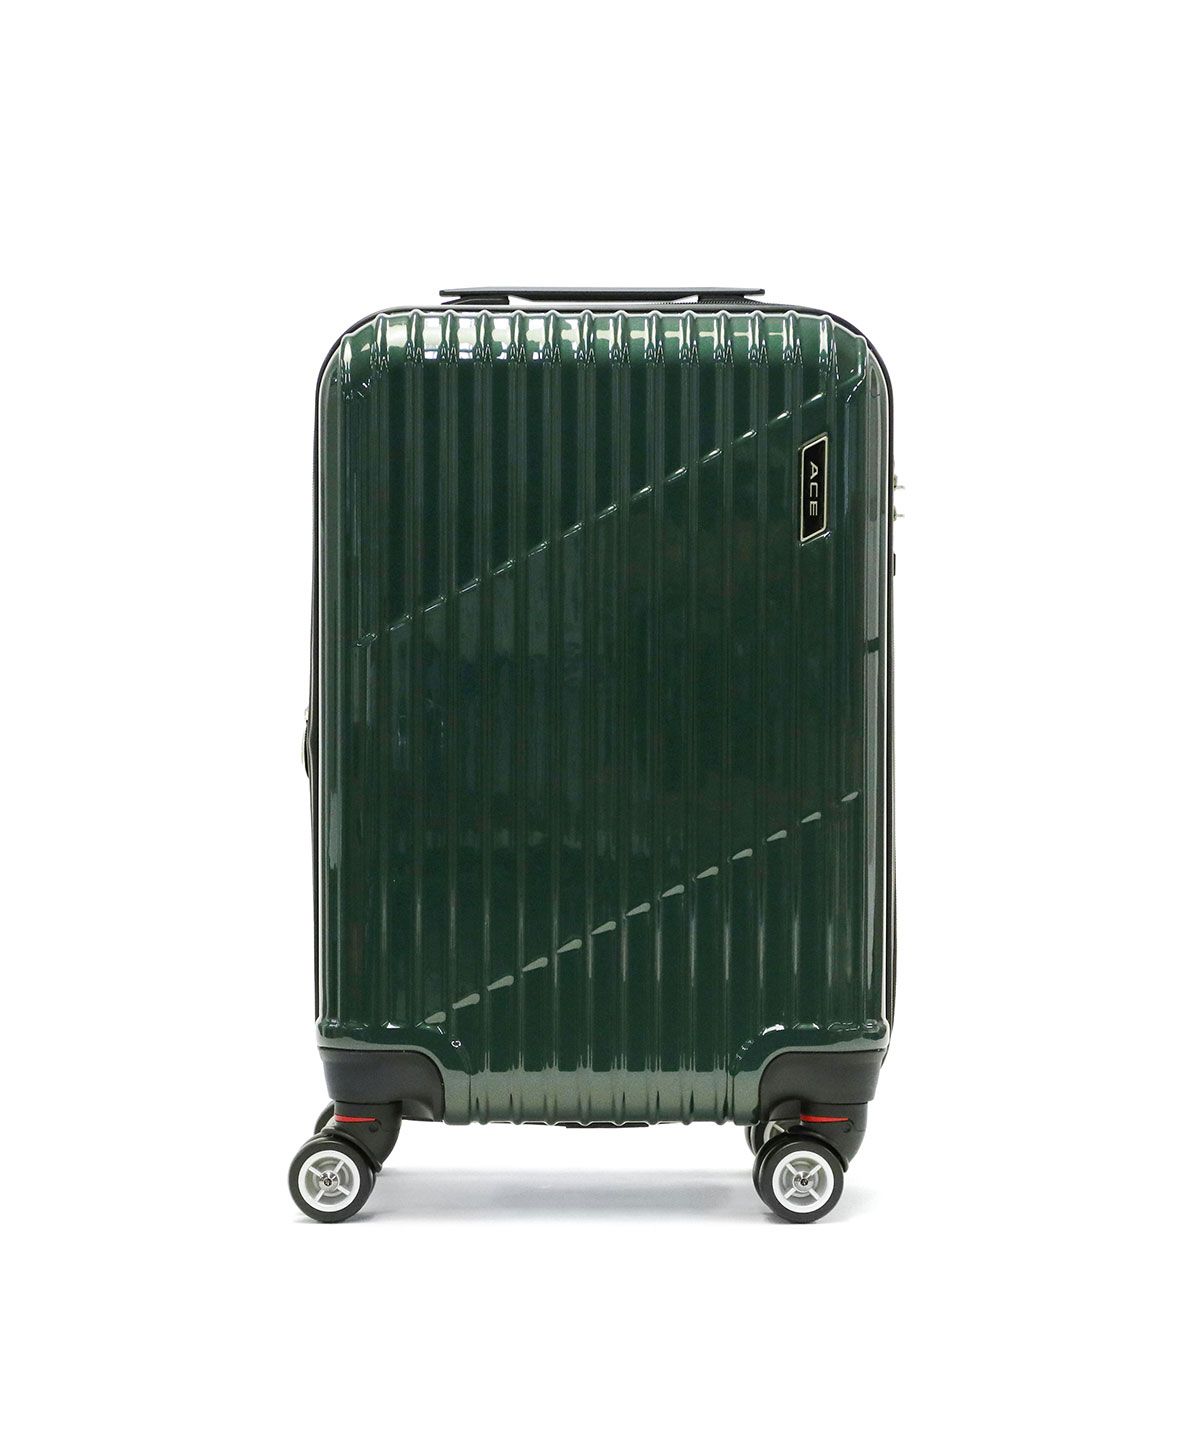 【低価新作登場】新品 スーツケース 機内持ち込み 小型軽量 4輪双輪 ビジネス フロントオープン キャリーケース ミチコロンドンMCL2065-34 M168 スーツケース、トランク一般